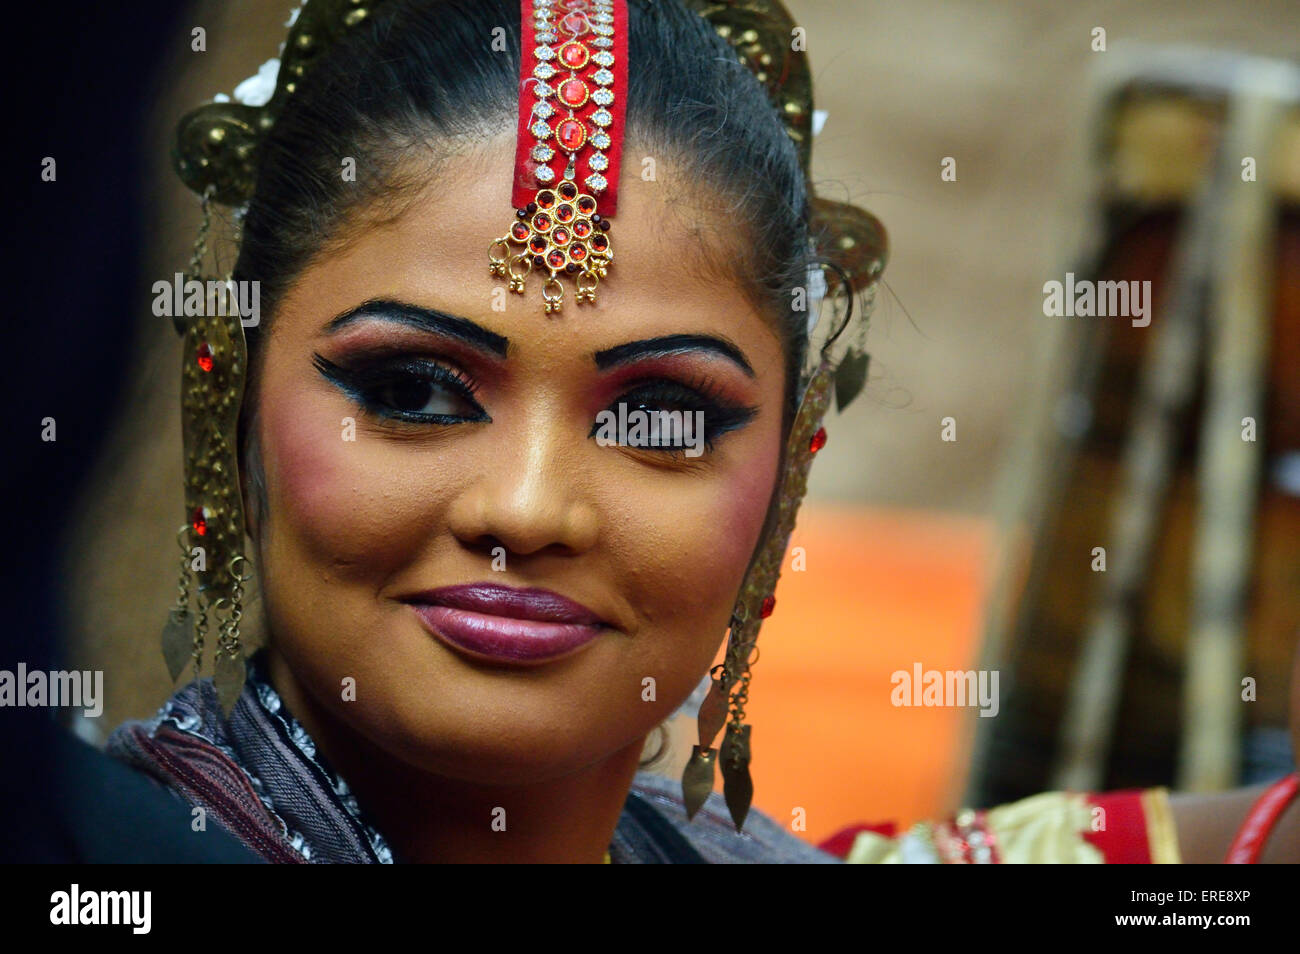 En Suraj Kund, Haryana, cerca de Delhi. Suraj Kund Feria de Artesanía 1 Feb 2015 sonriendo cerca de un primer bailarín de Sri Lanka Foto de stock